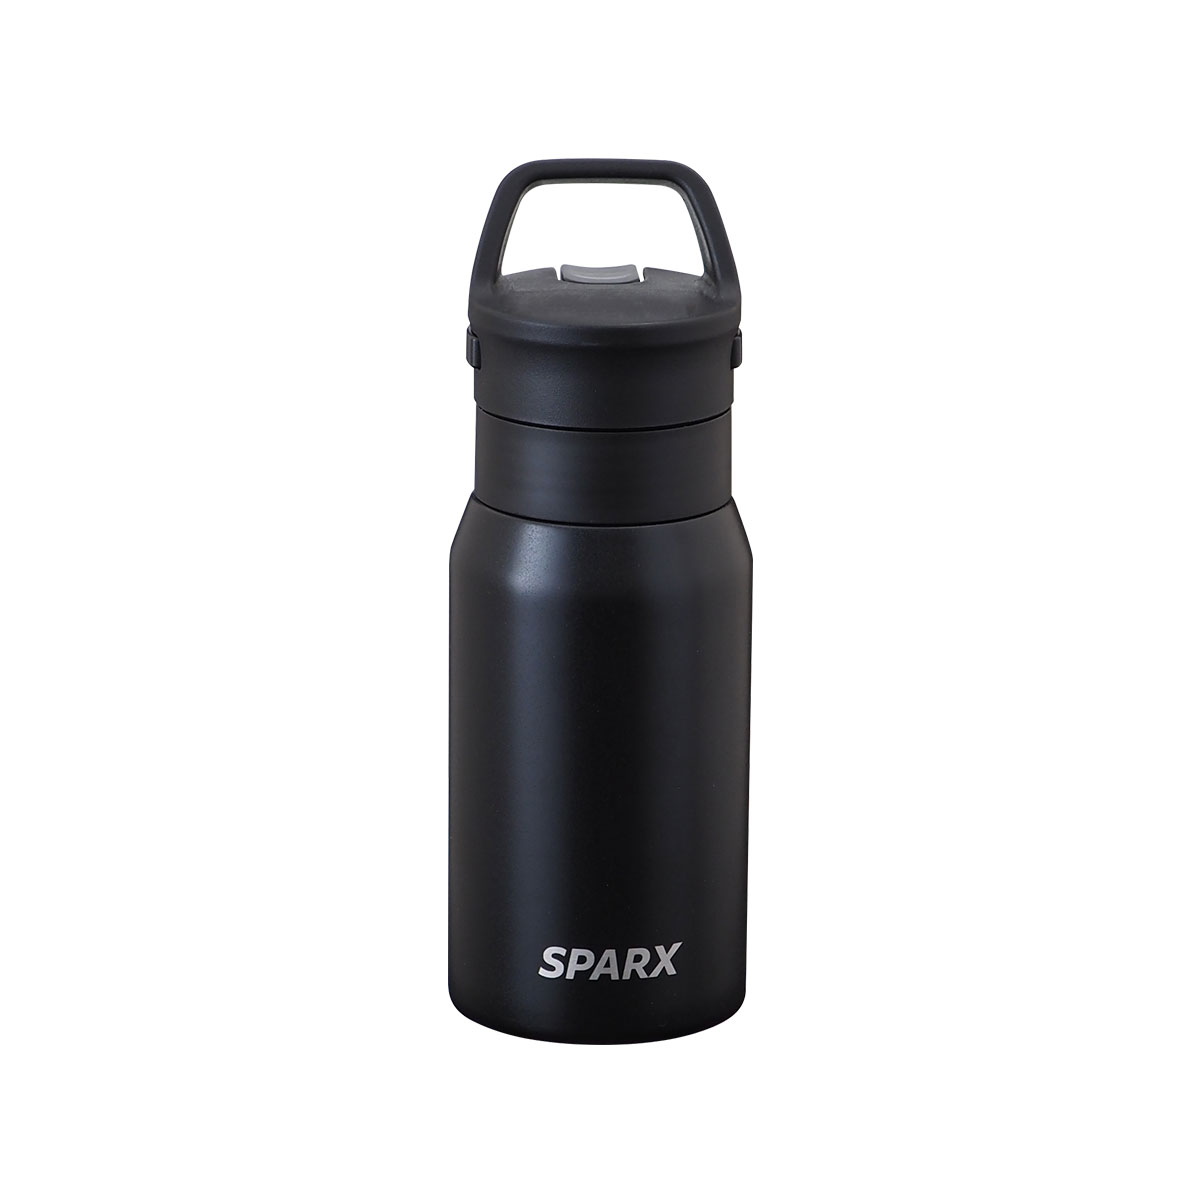 SPARX 真空断熱炭酸用ボトル 370ml ブラック